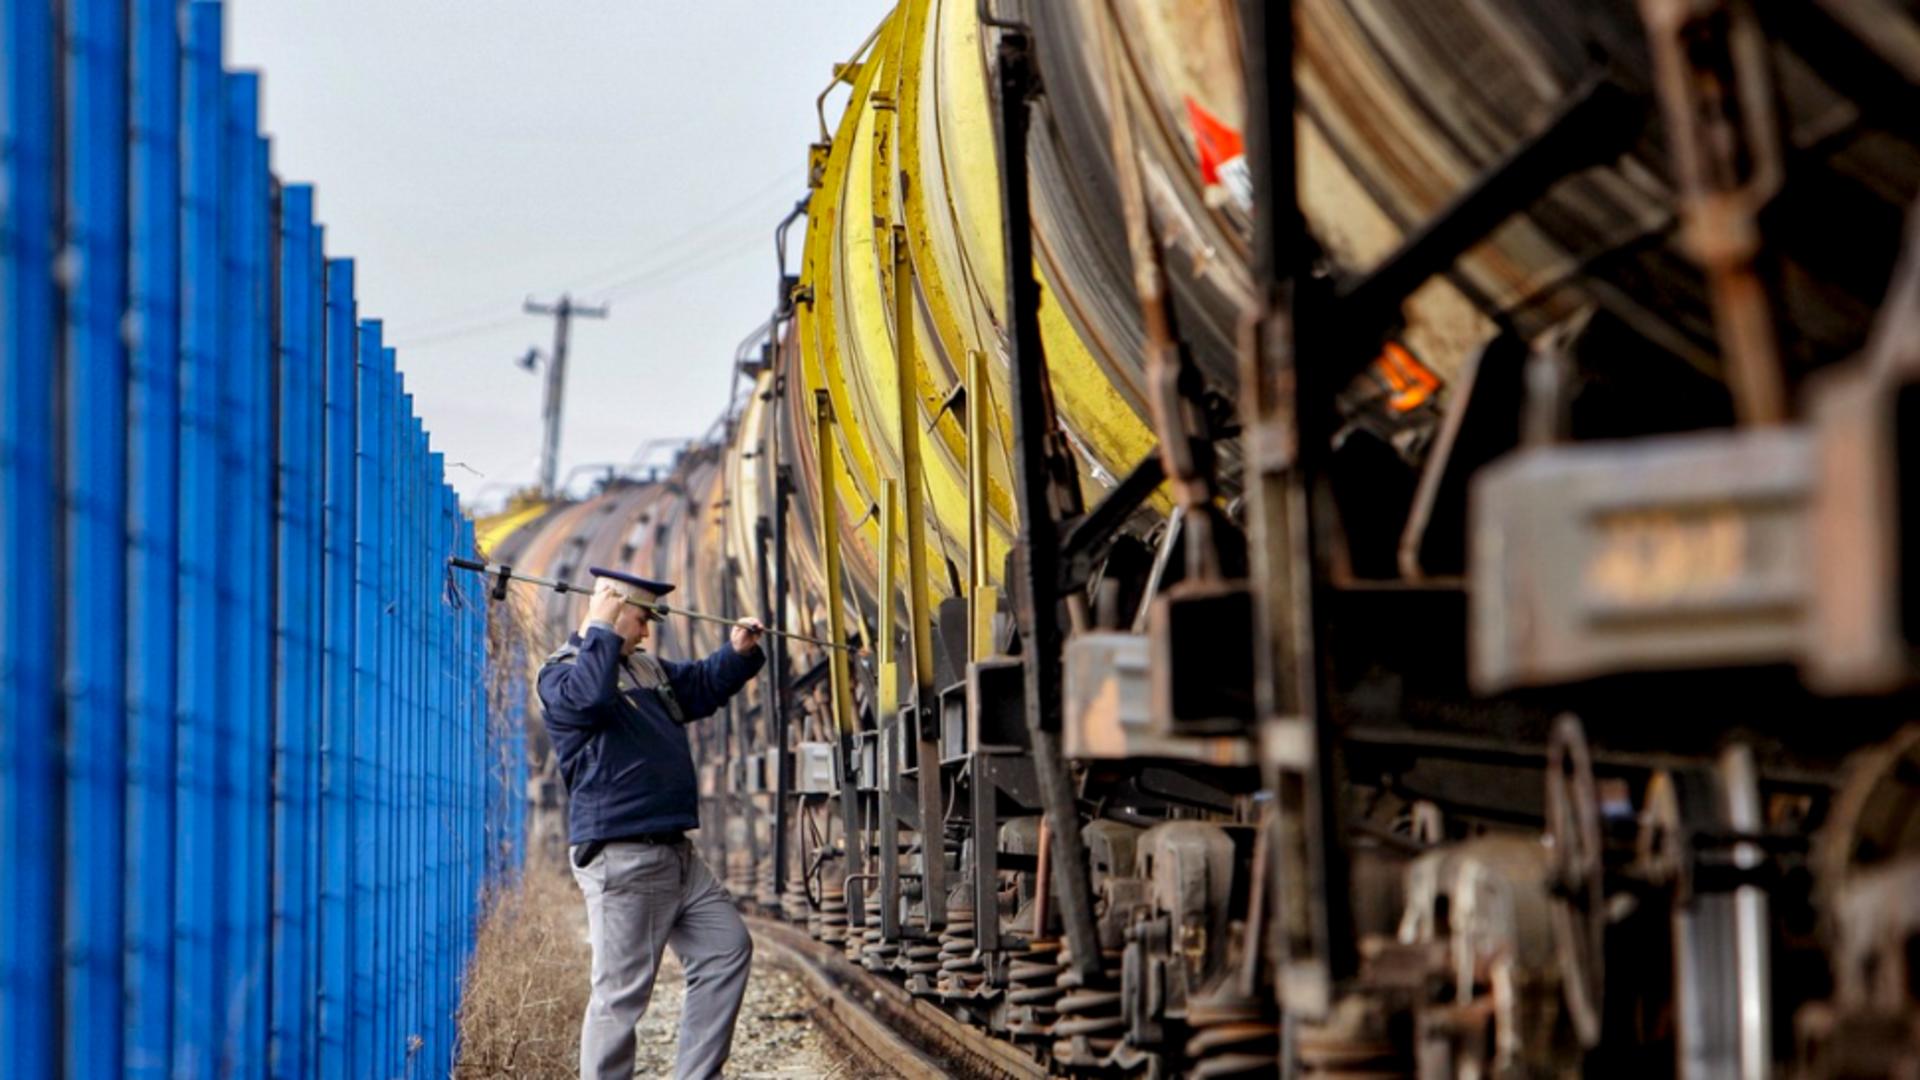 Trafic feroviar oprit în județul Constanța, pentru evitarea producerii unei catastrofe. Scurgeri de gaz lichefiat la un vagon, acțiuni contra cronometru